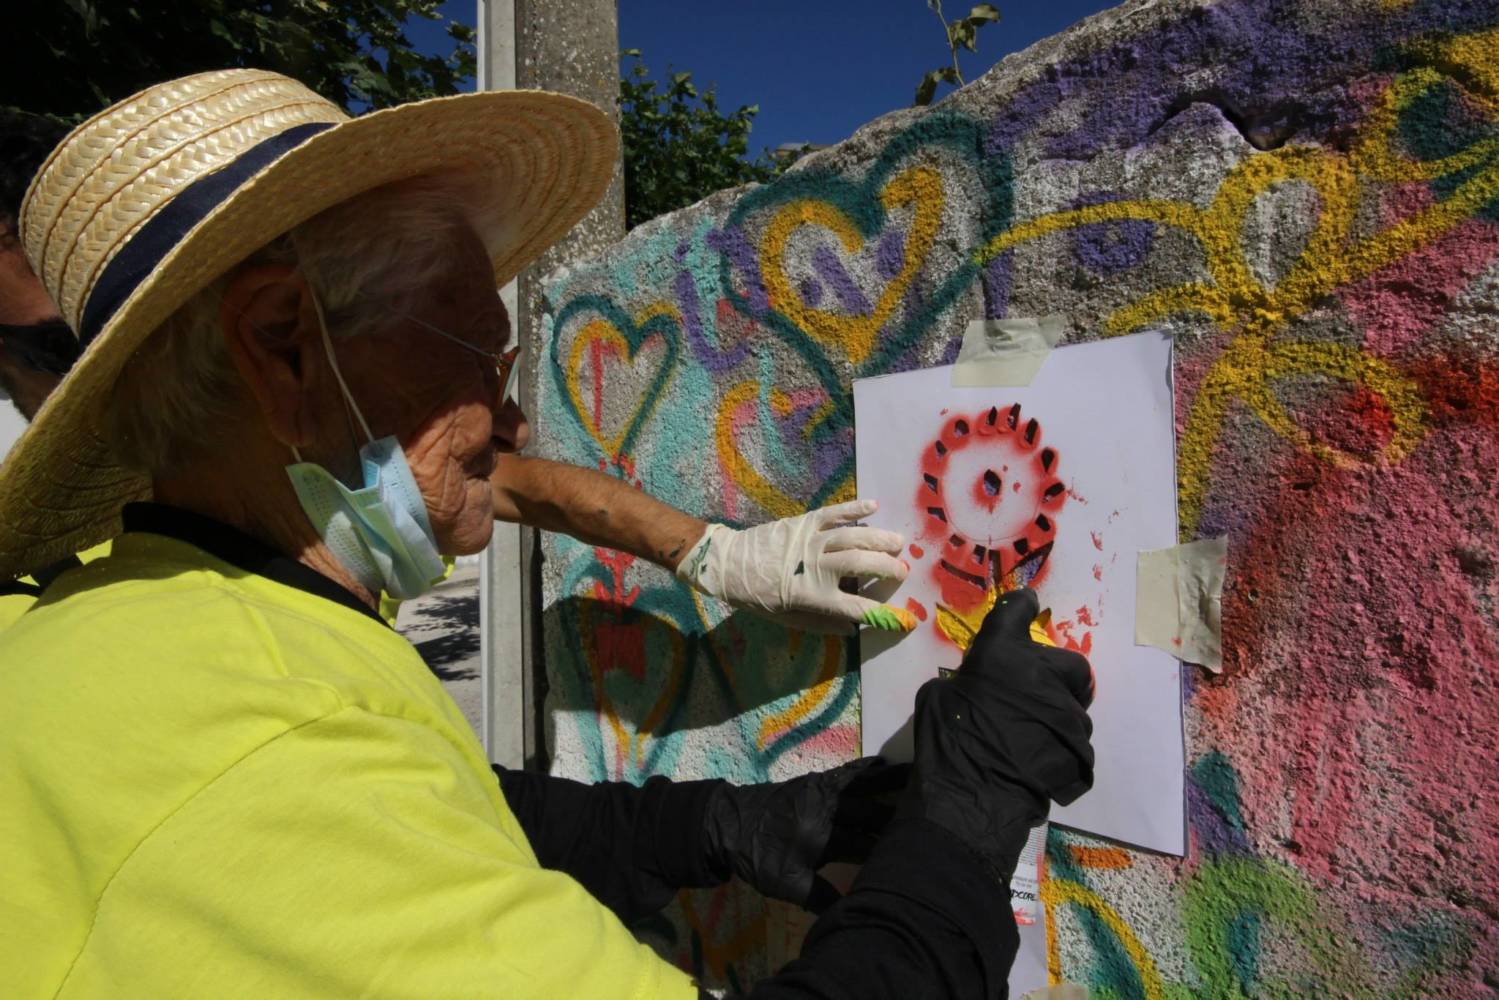 revistaprosaversoearte.com - Oficinas que ensinam idosos a grafitar pelas ruas de Lisboa, Portugal